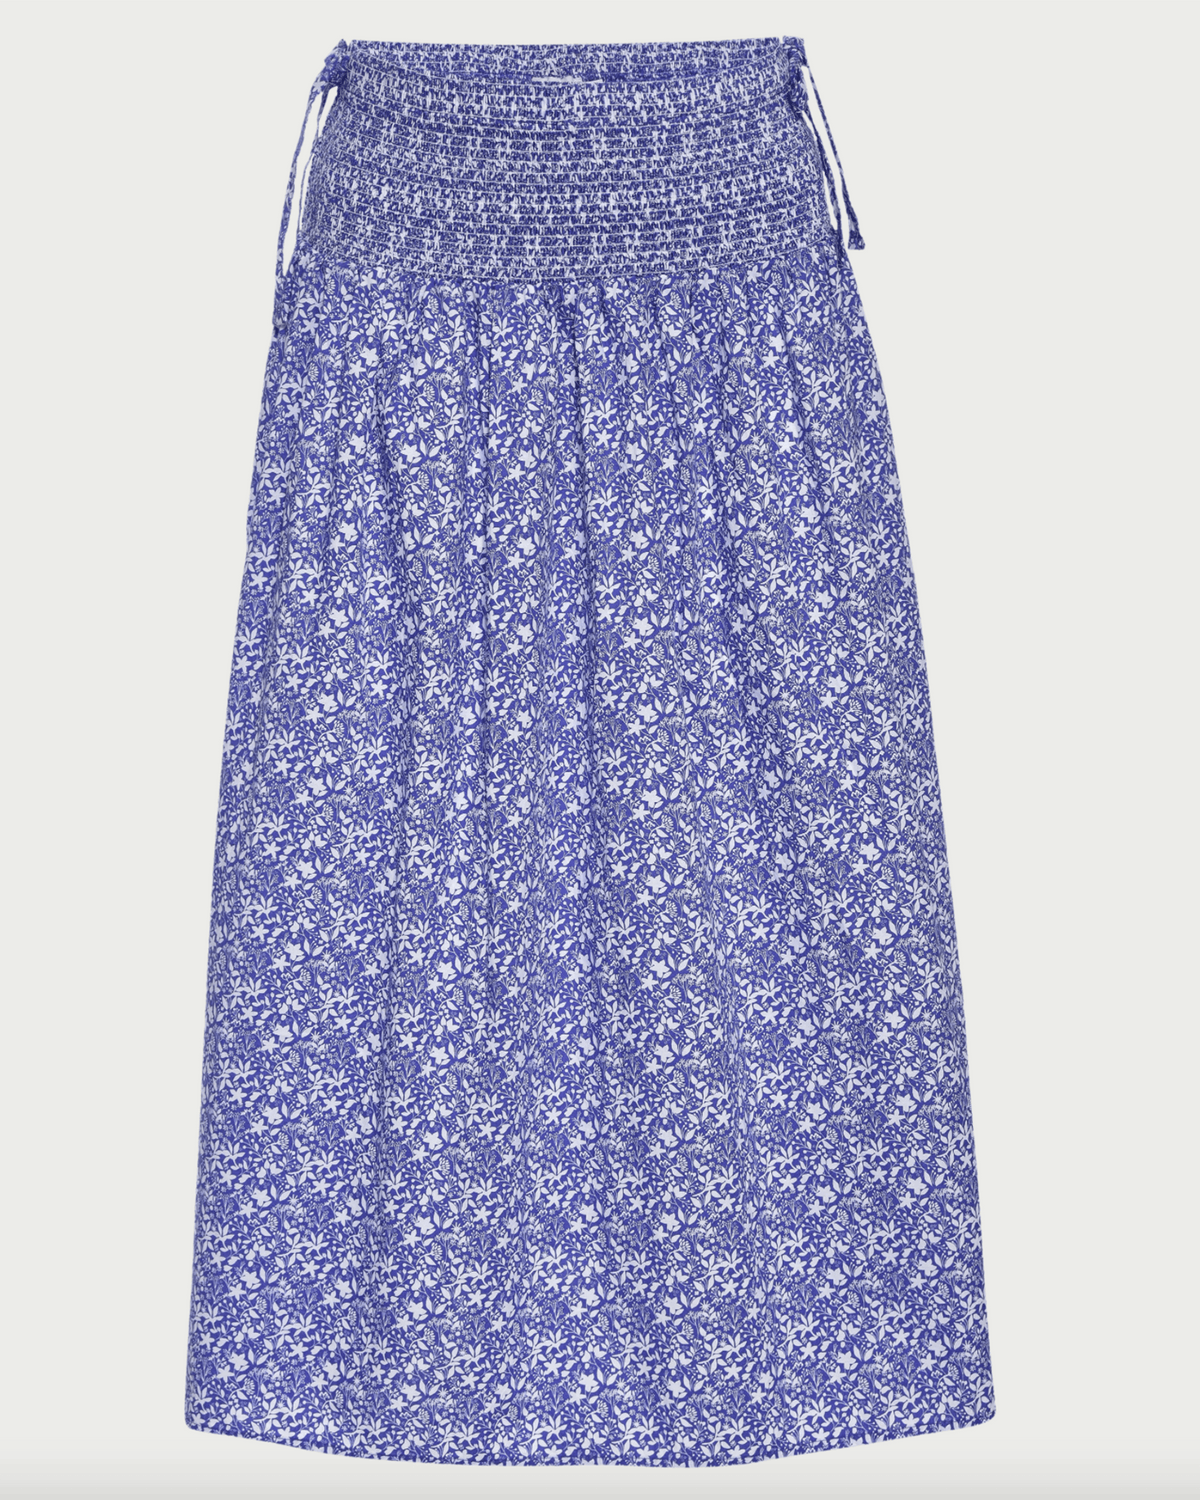 Nation LTD Clothing Primrose Smocked Skirt w/ Ties in Mykonos